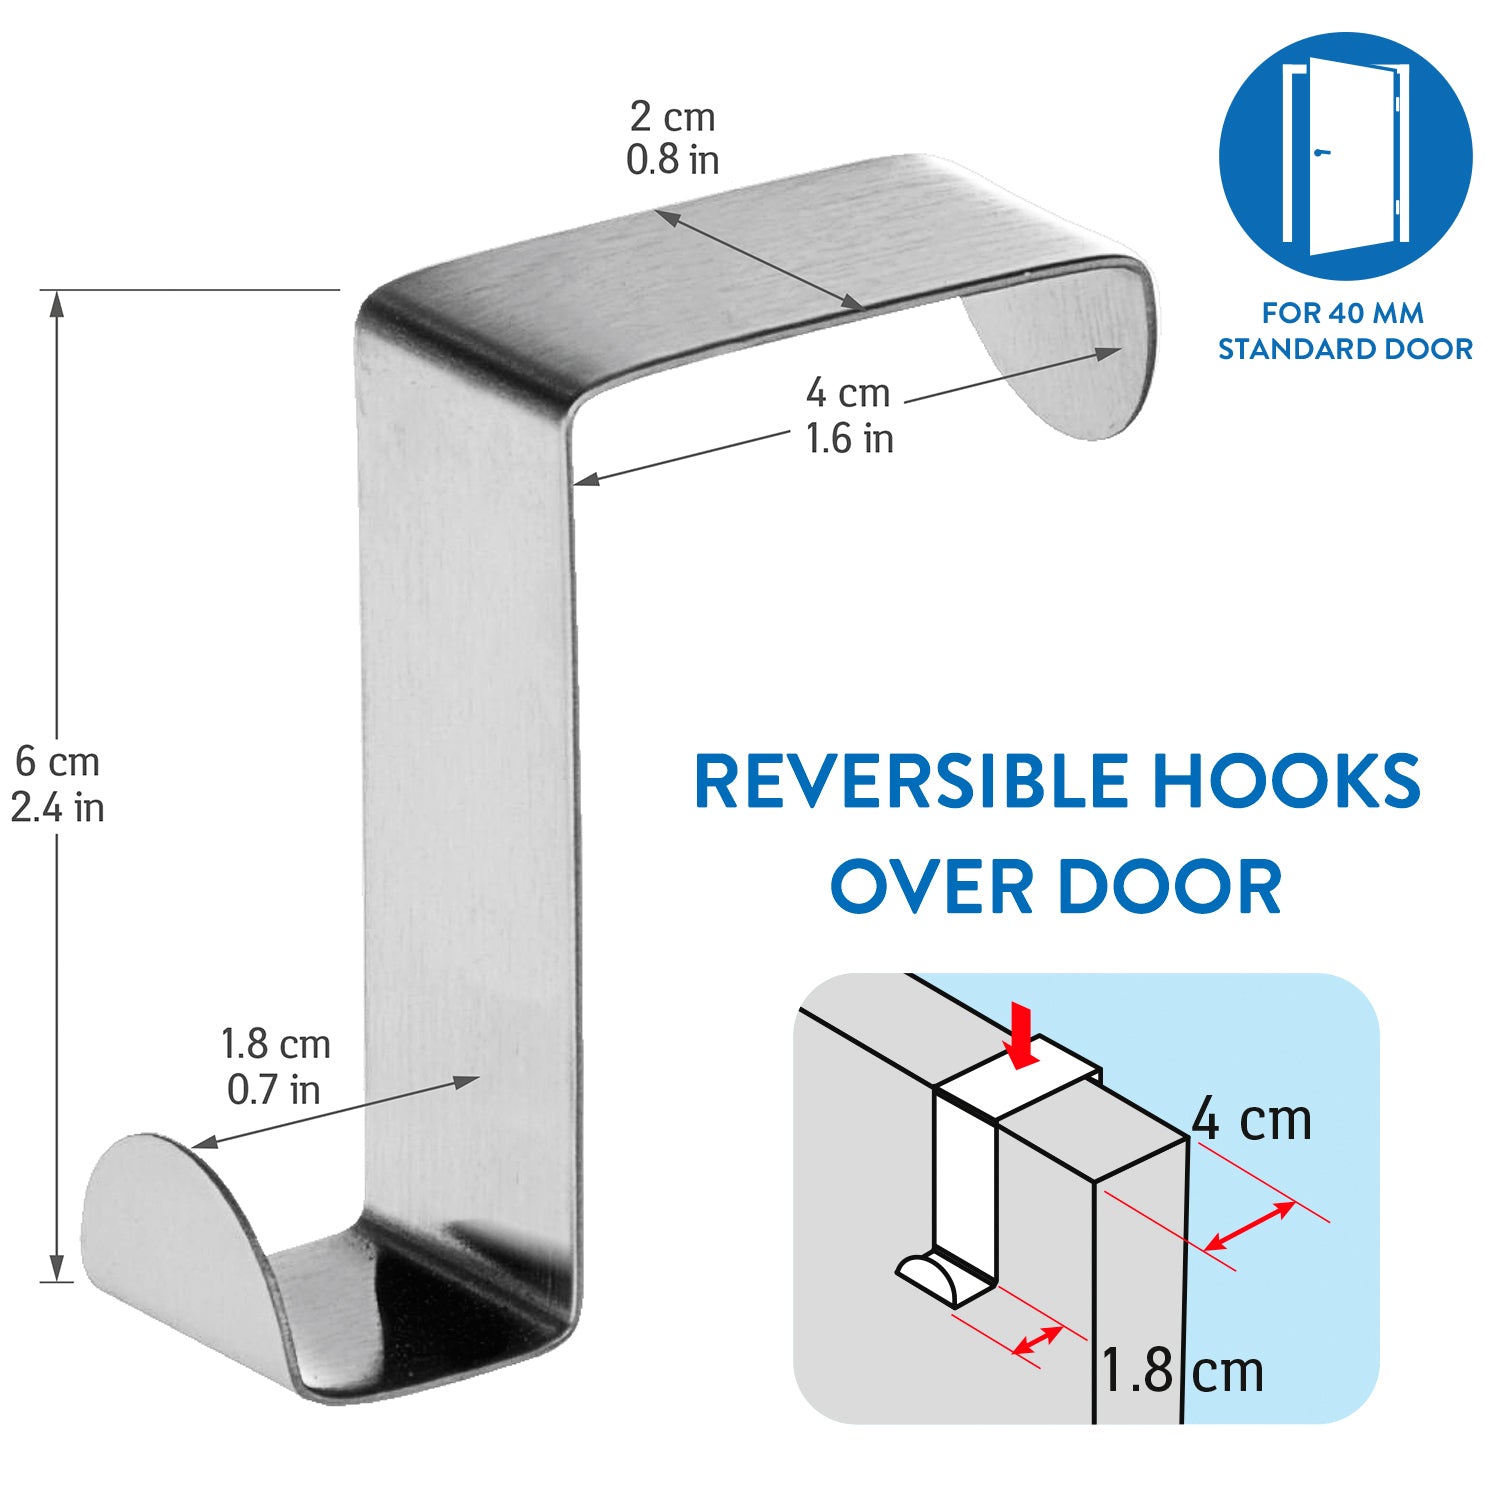 7 Stainless Steel Door Hooks,Reversible for Standard Door and Wardrobe, Tatkraft Seger, 2